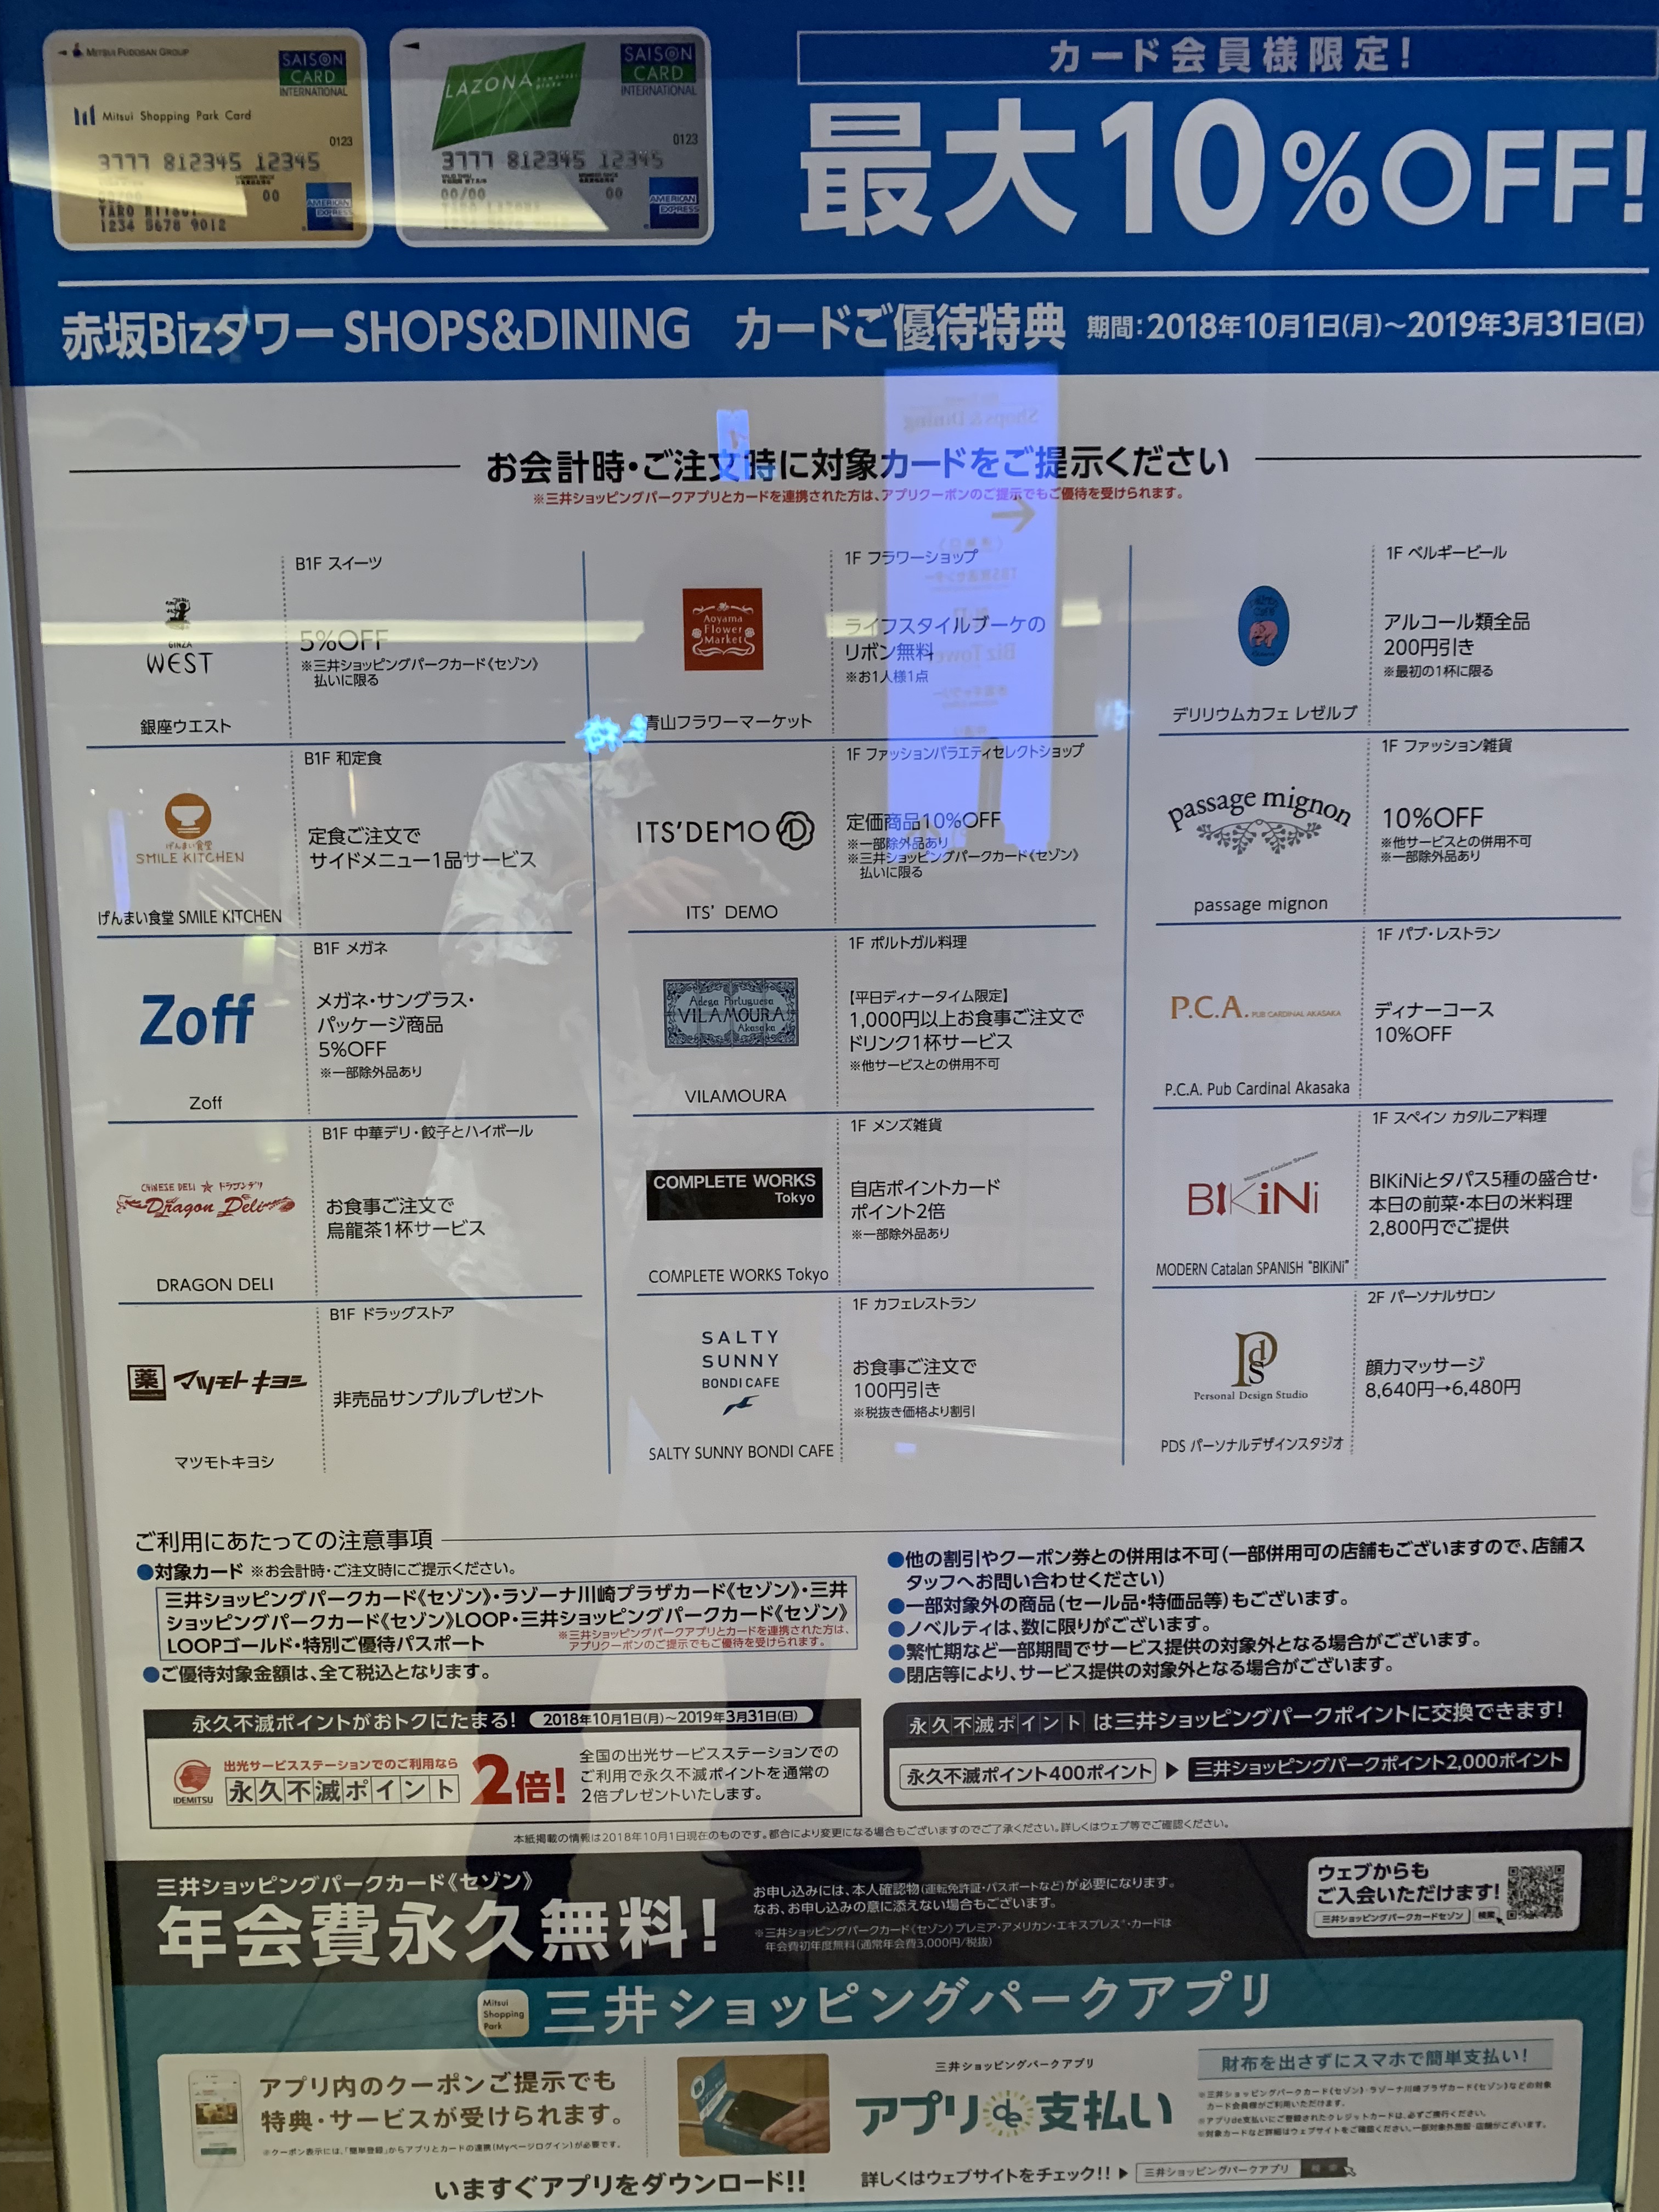 三井ショッピングパークカード提示で最大10%OFF